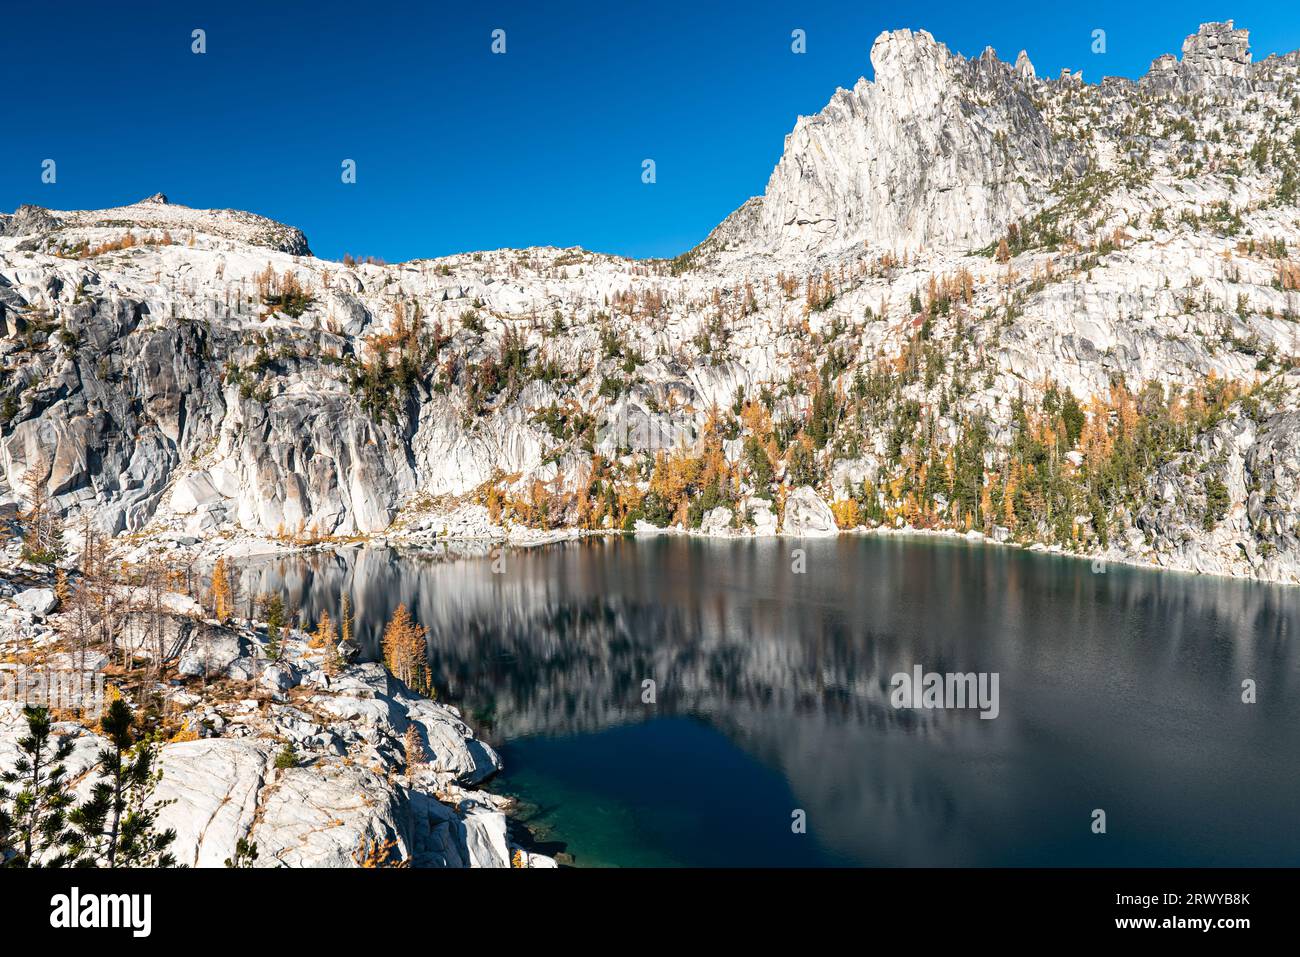 Granitklippen des Prusik Peak sind mit goldenen Lärchen übersät und umgeben das tiefe blaue Wasser des Viviane-Sees an einem knusprigen Herbsttag in The Enchantment Stockfoto